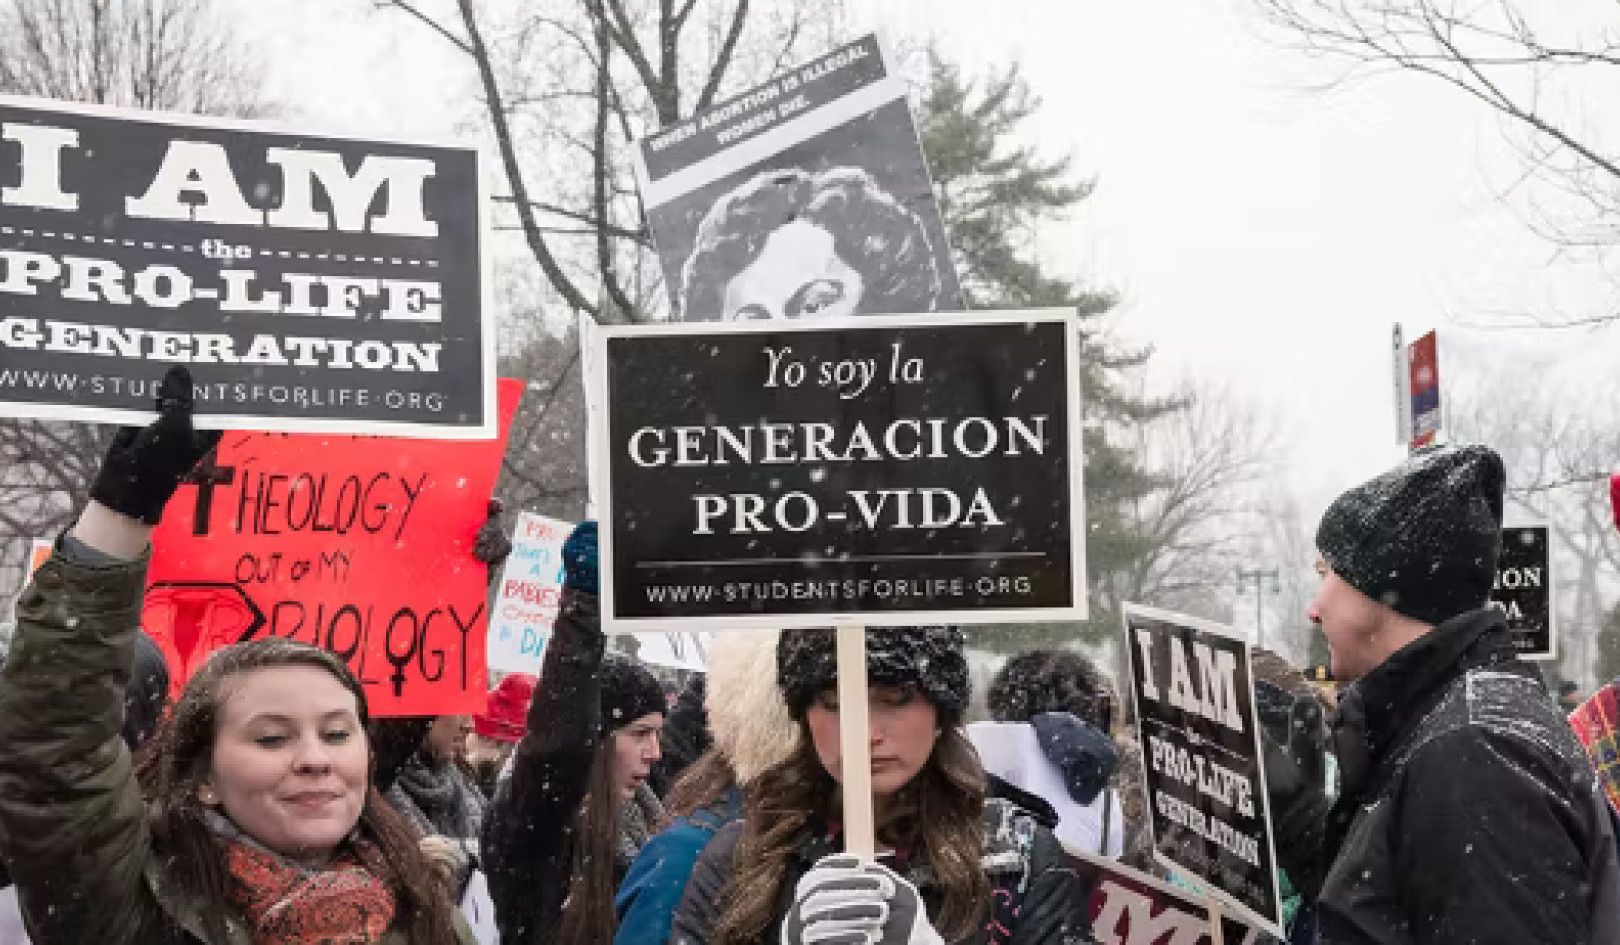 ما الذي يدفع حقًا إلى المعتقدات المناهضة للإجهاض؟